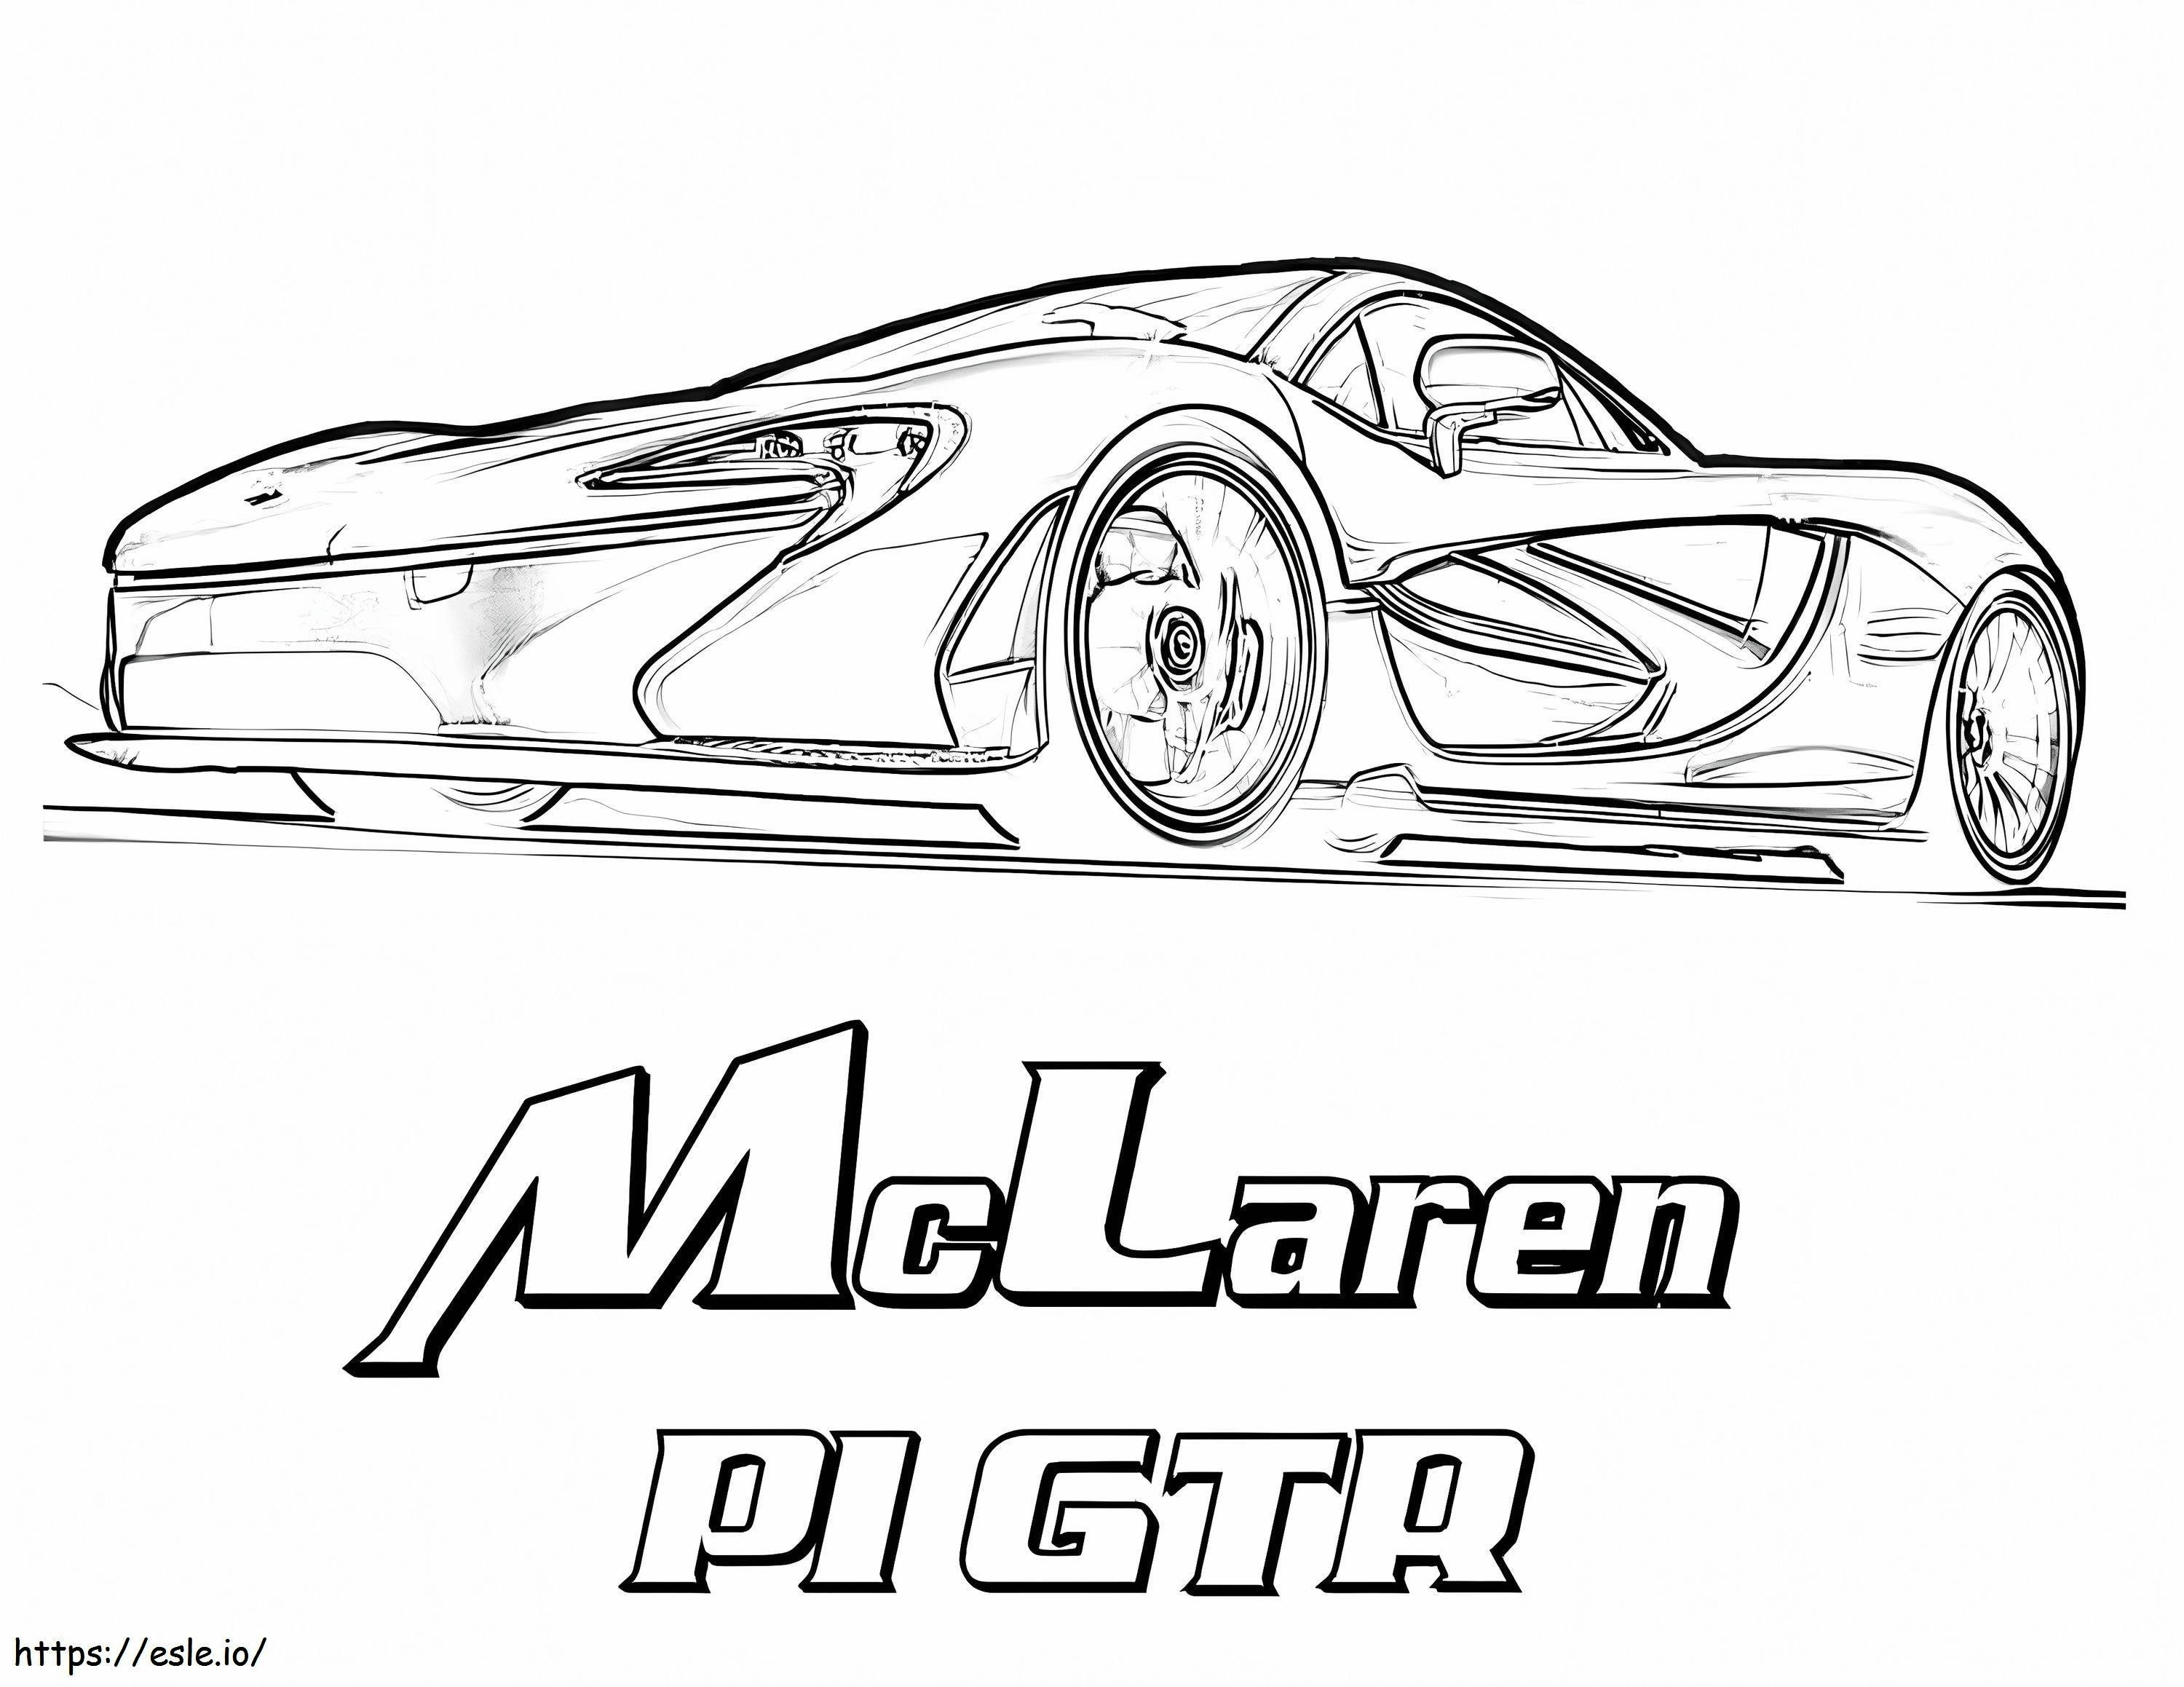 McLaren P1 GTR kifestő